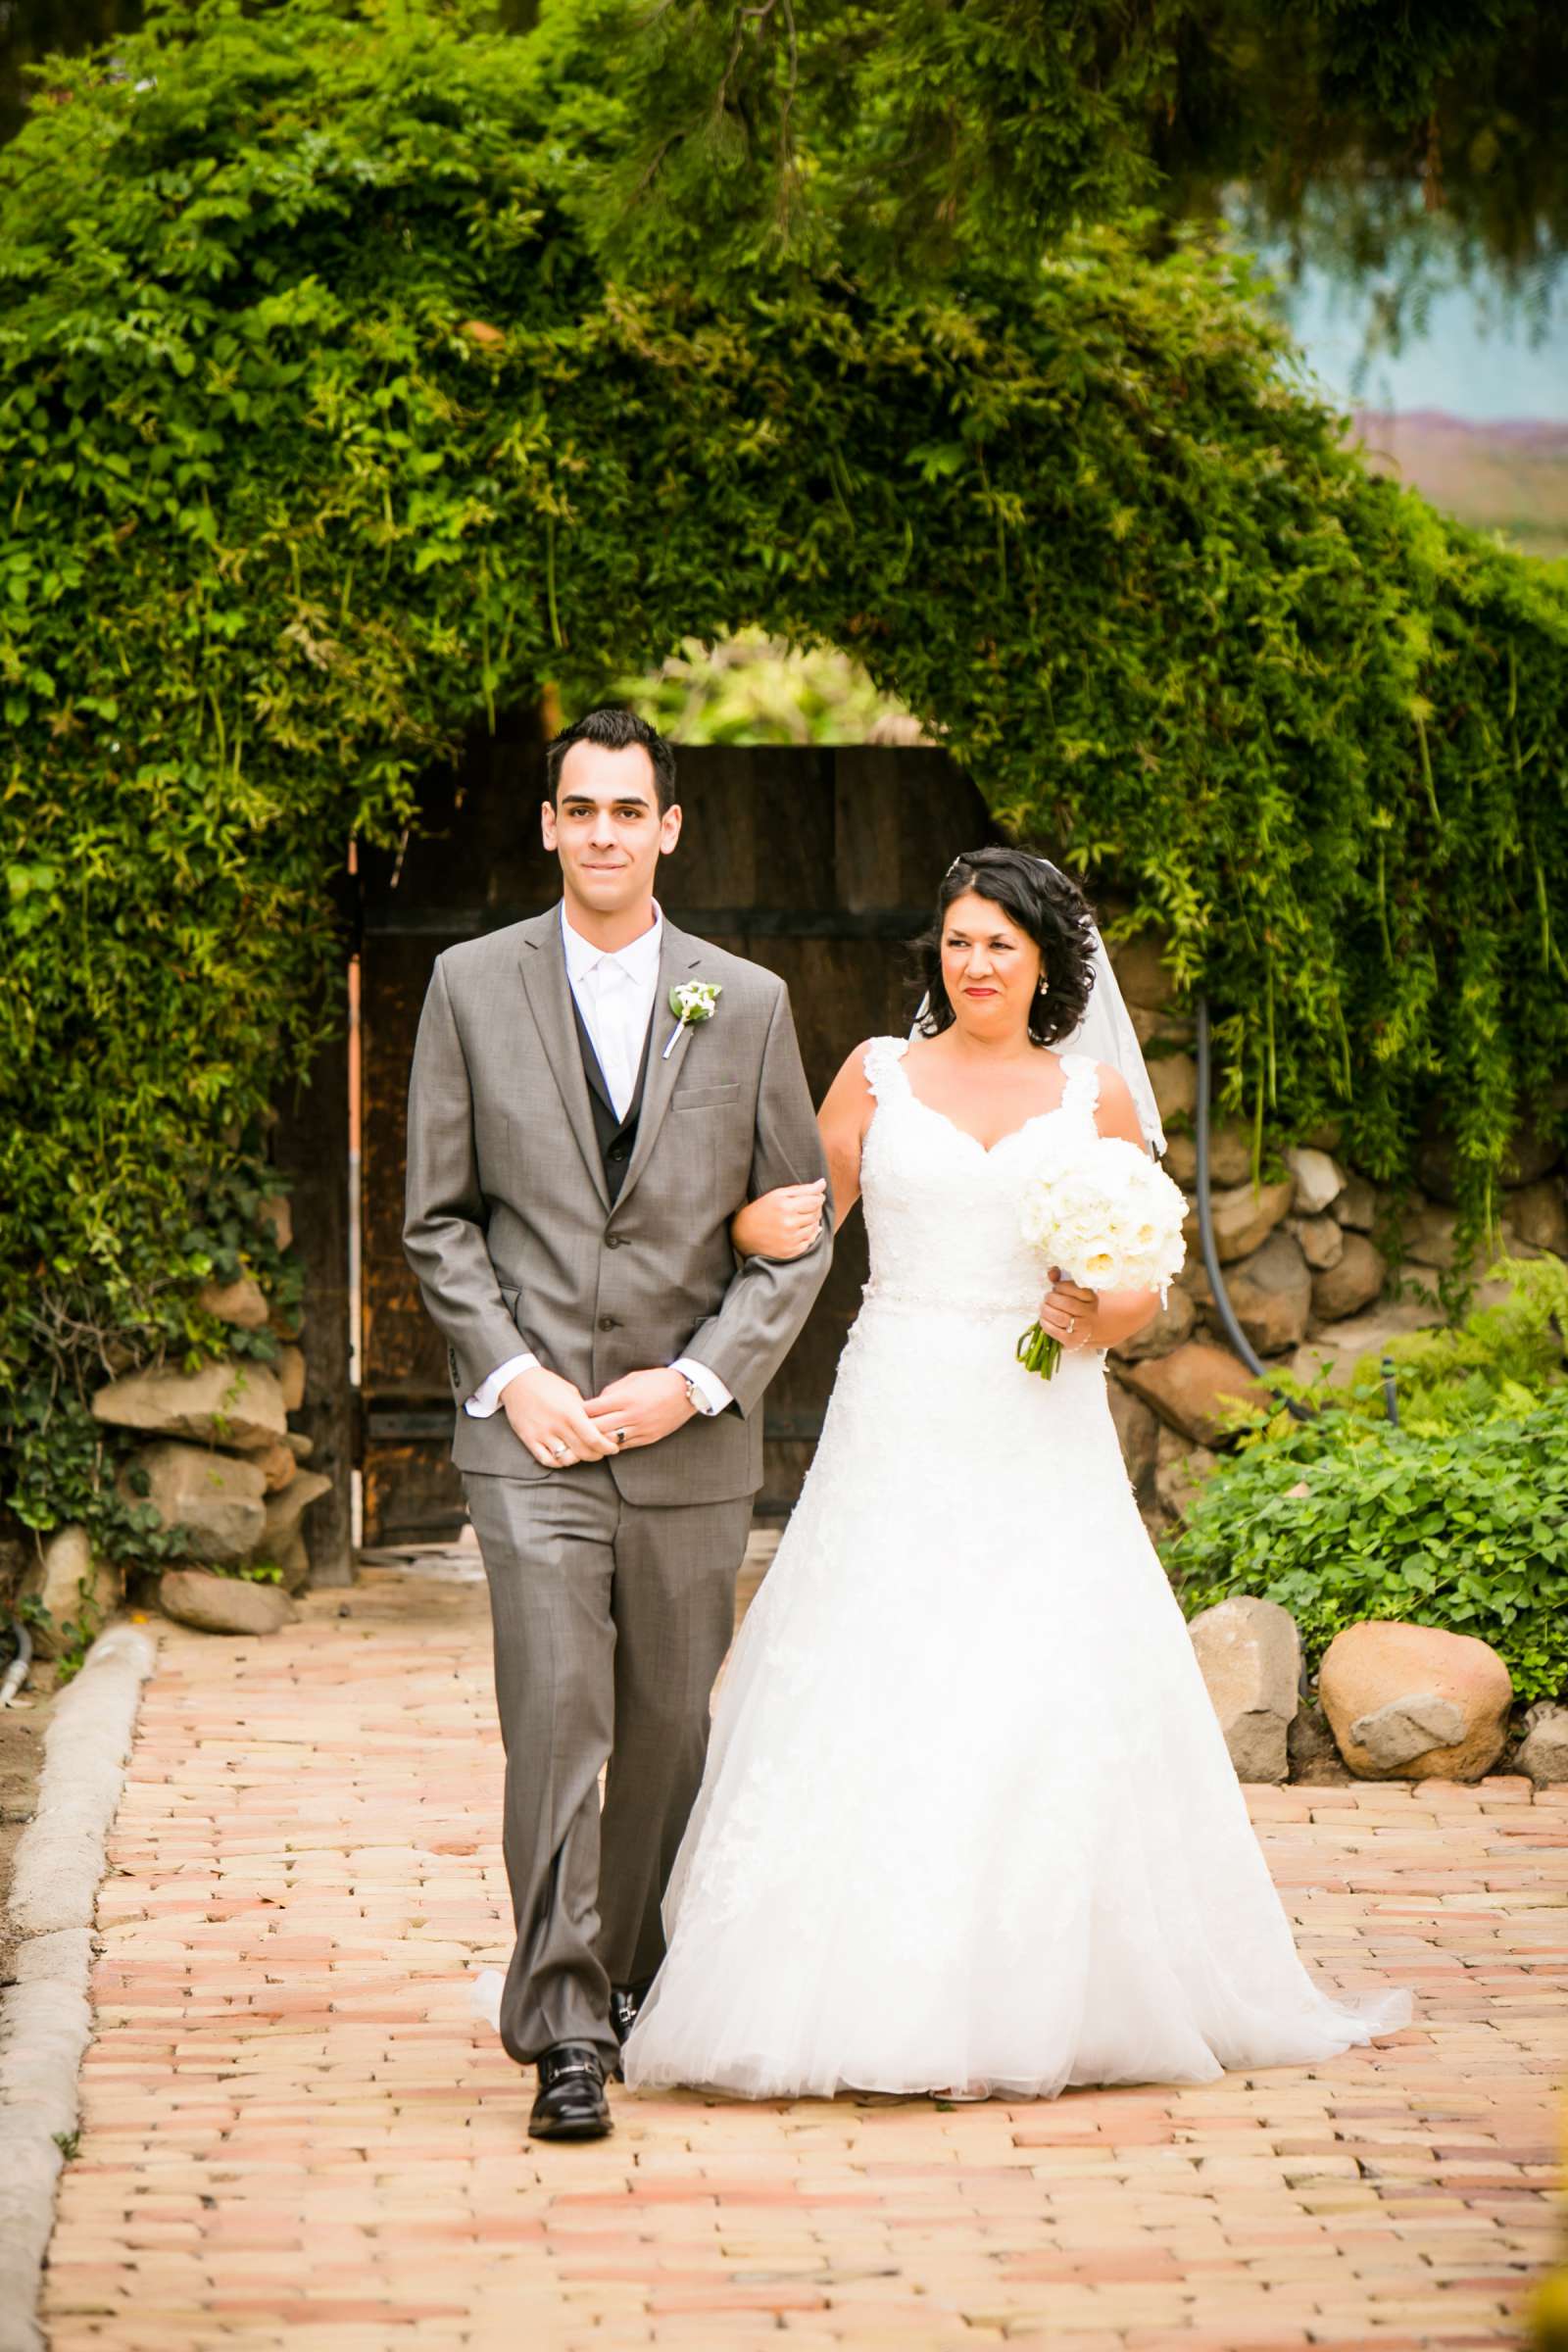 Rancho Buena Vista Adobe Wedding, Ellinor and Frank Wedding Photo #22 by True Photography